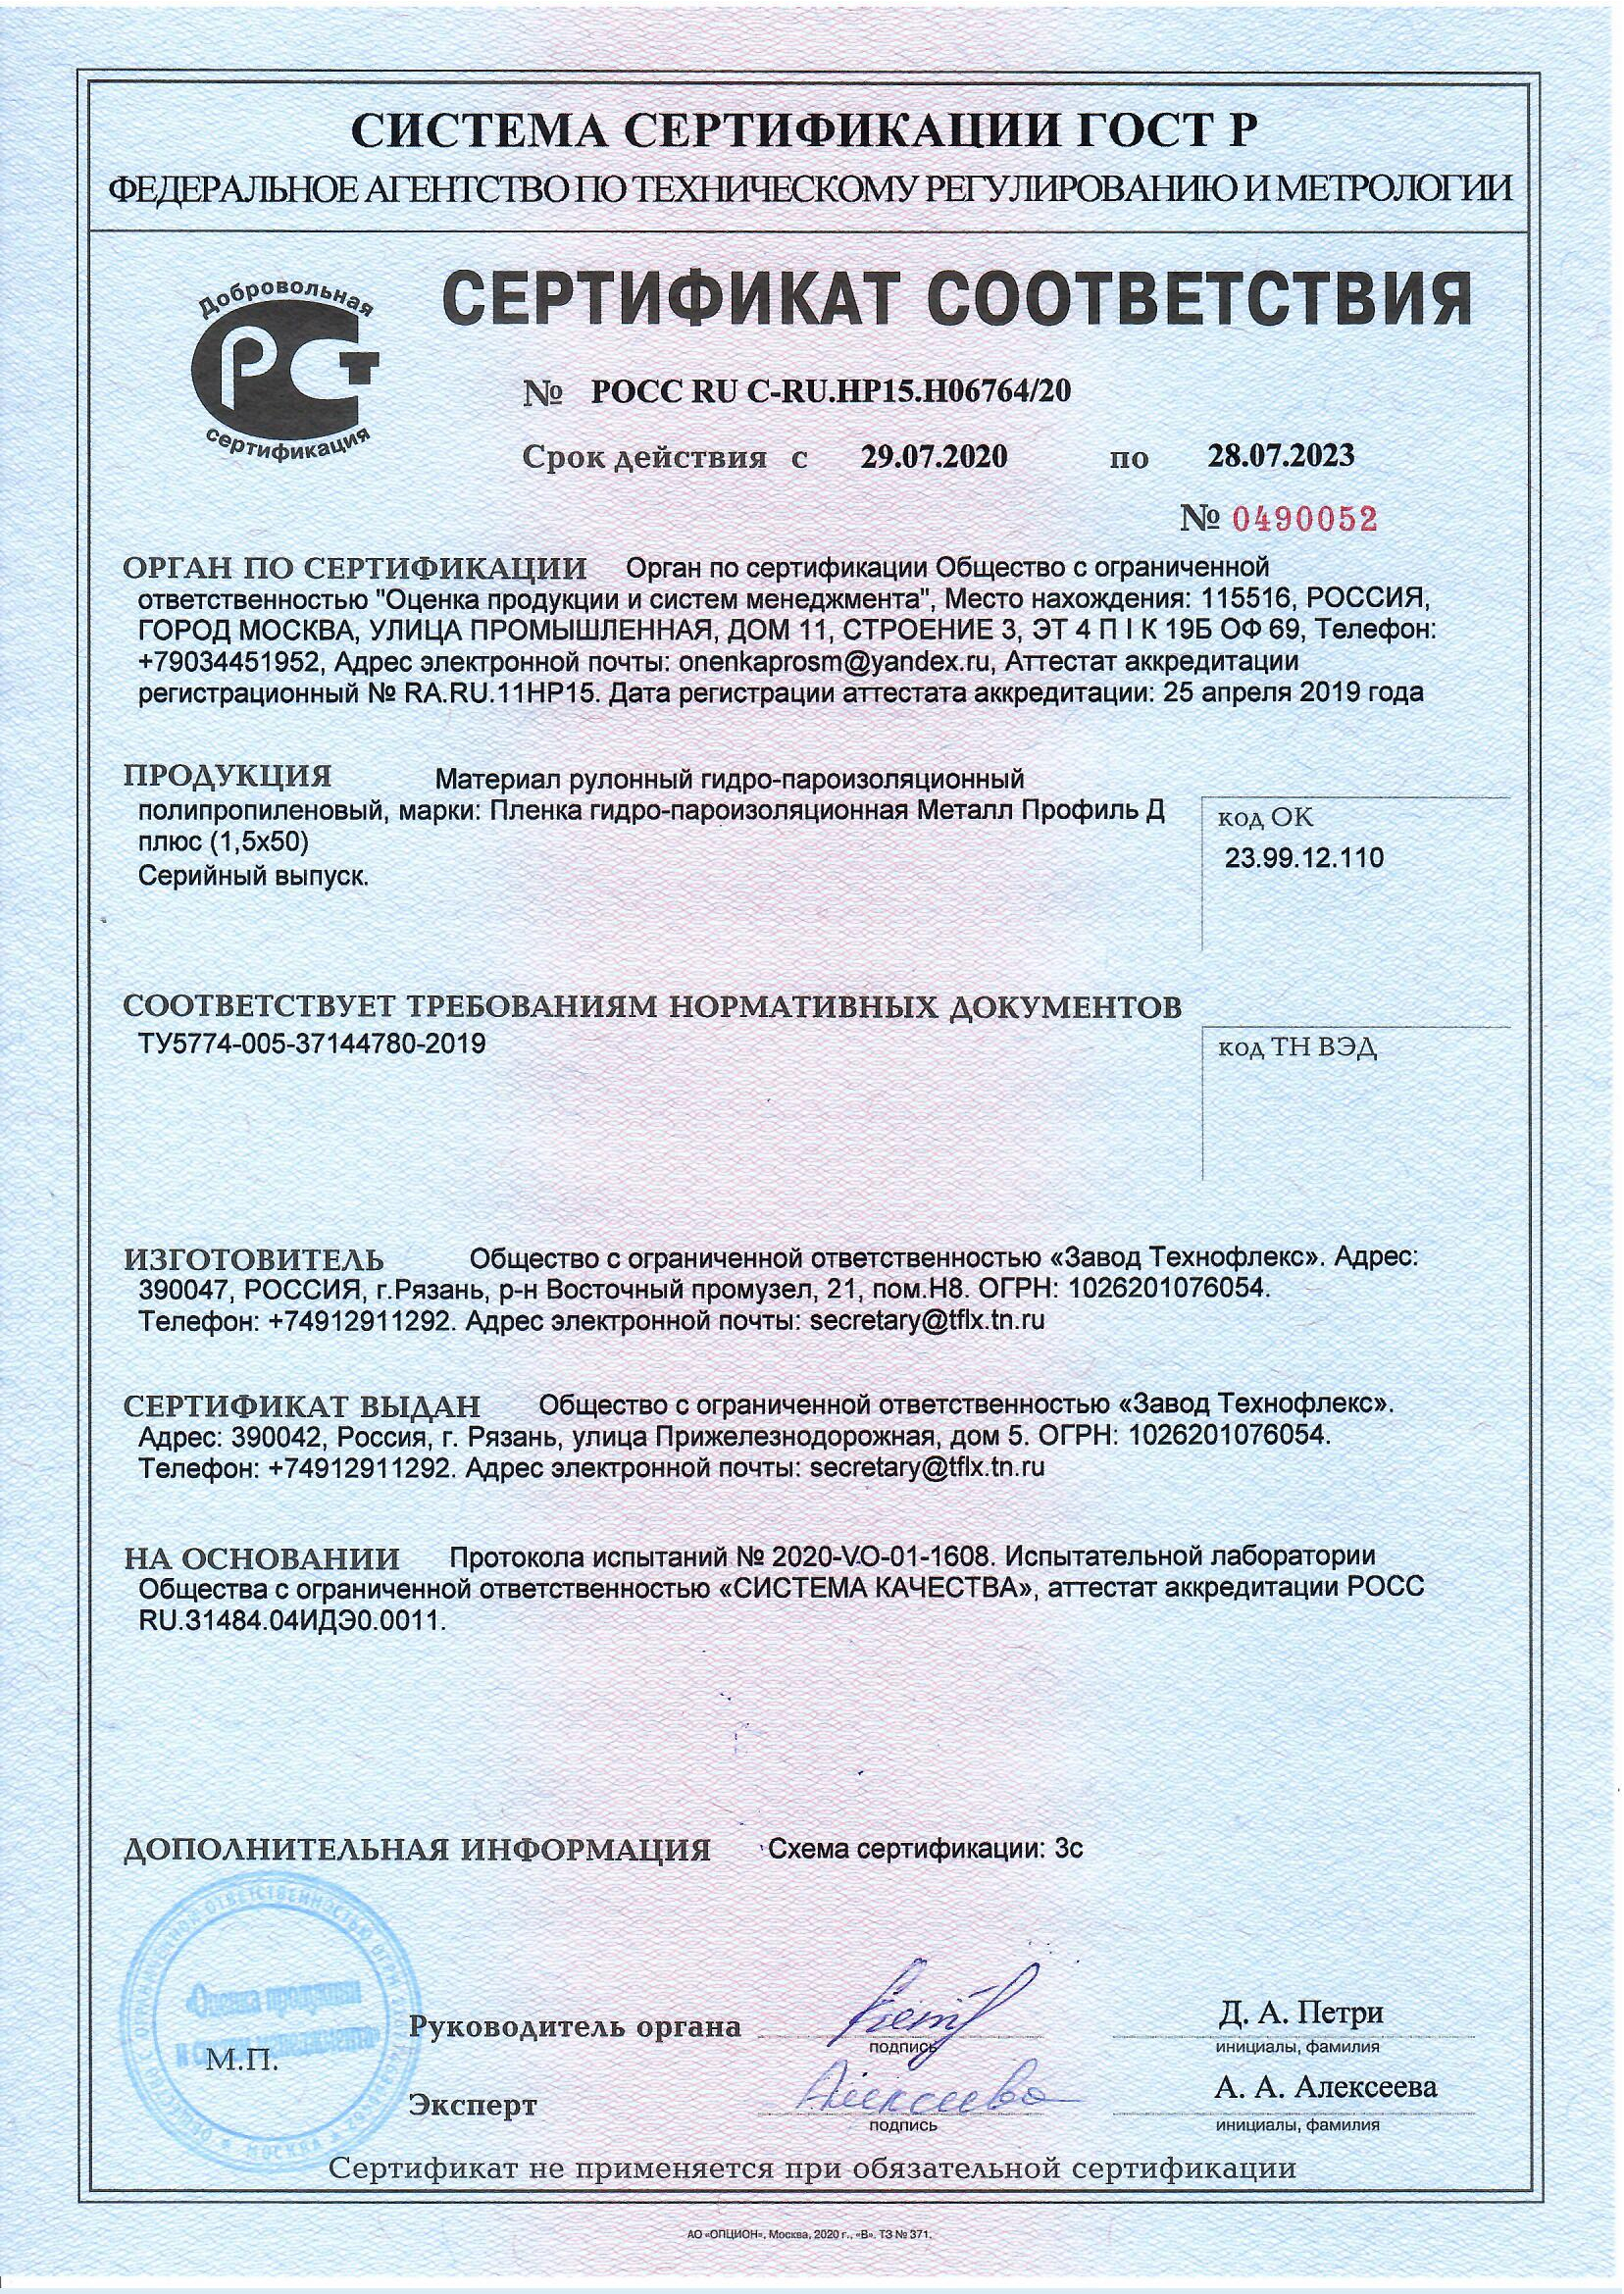 Сертификат соответствия гидро-, паро-изоляционный материал «Металл Профиль»